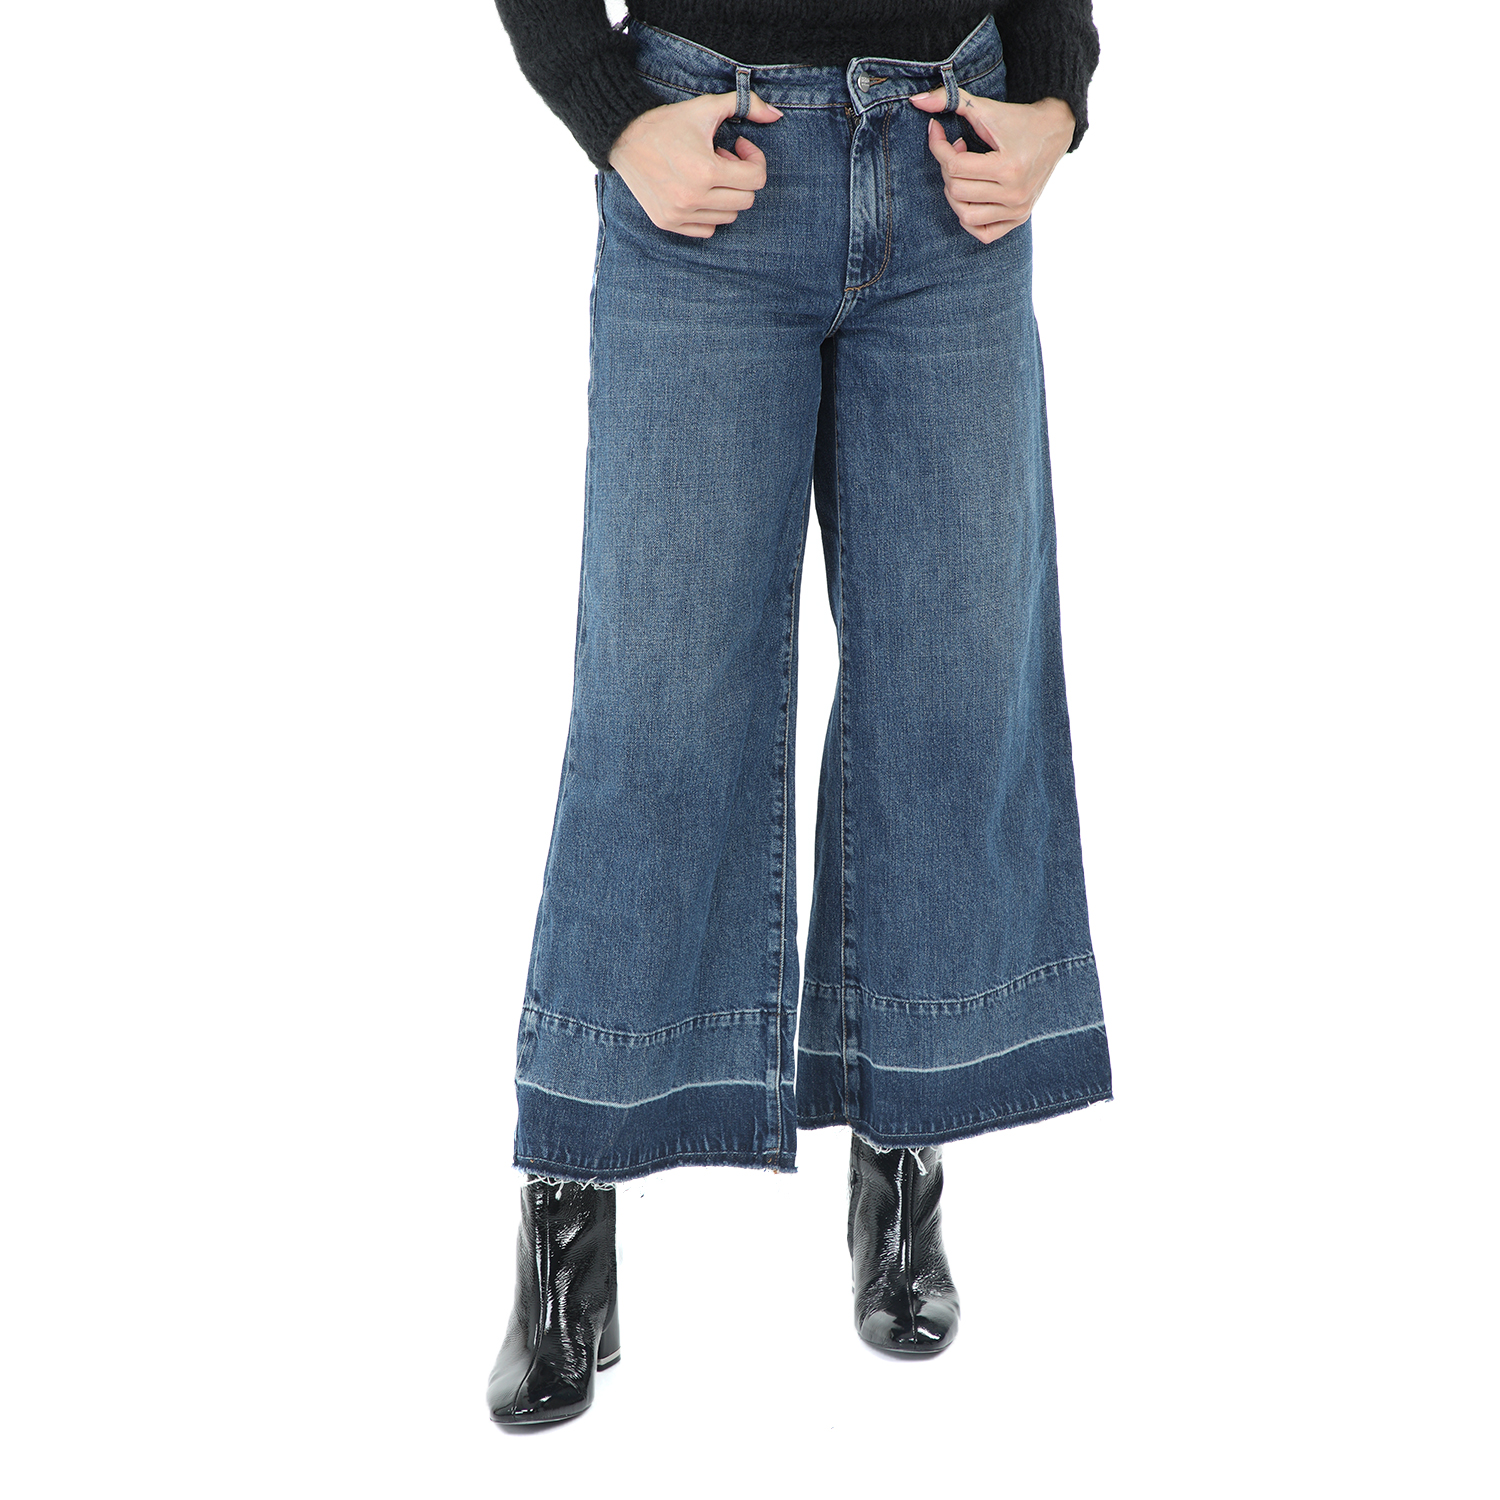 Γυναικεία/Ρούχα/Τζίν/Καμπάνες REIKO - Γυναικείο cropped jean παντελόνι REIKO μπλε